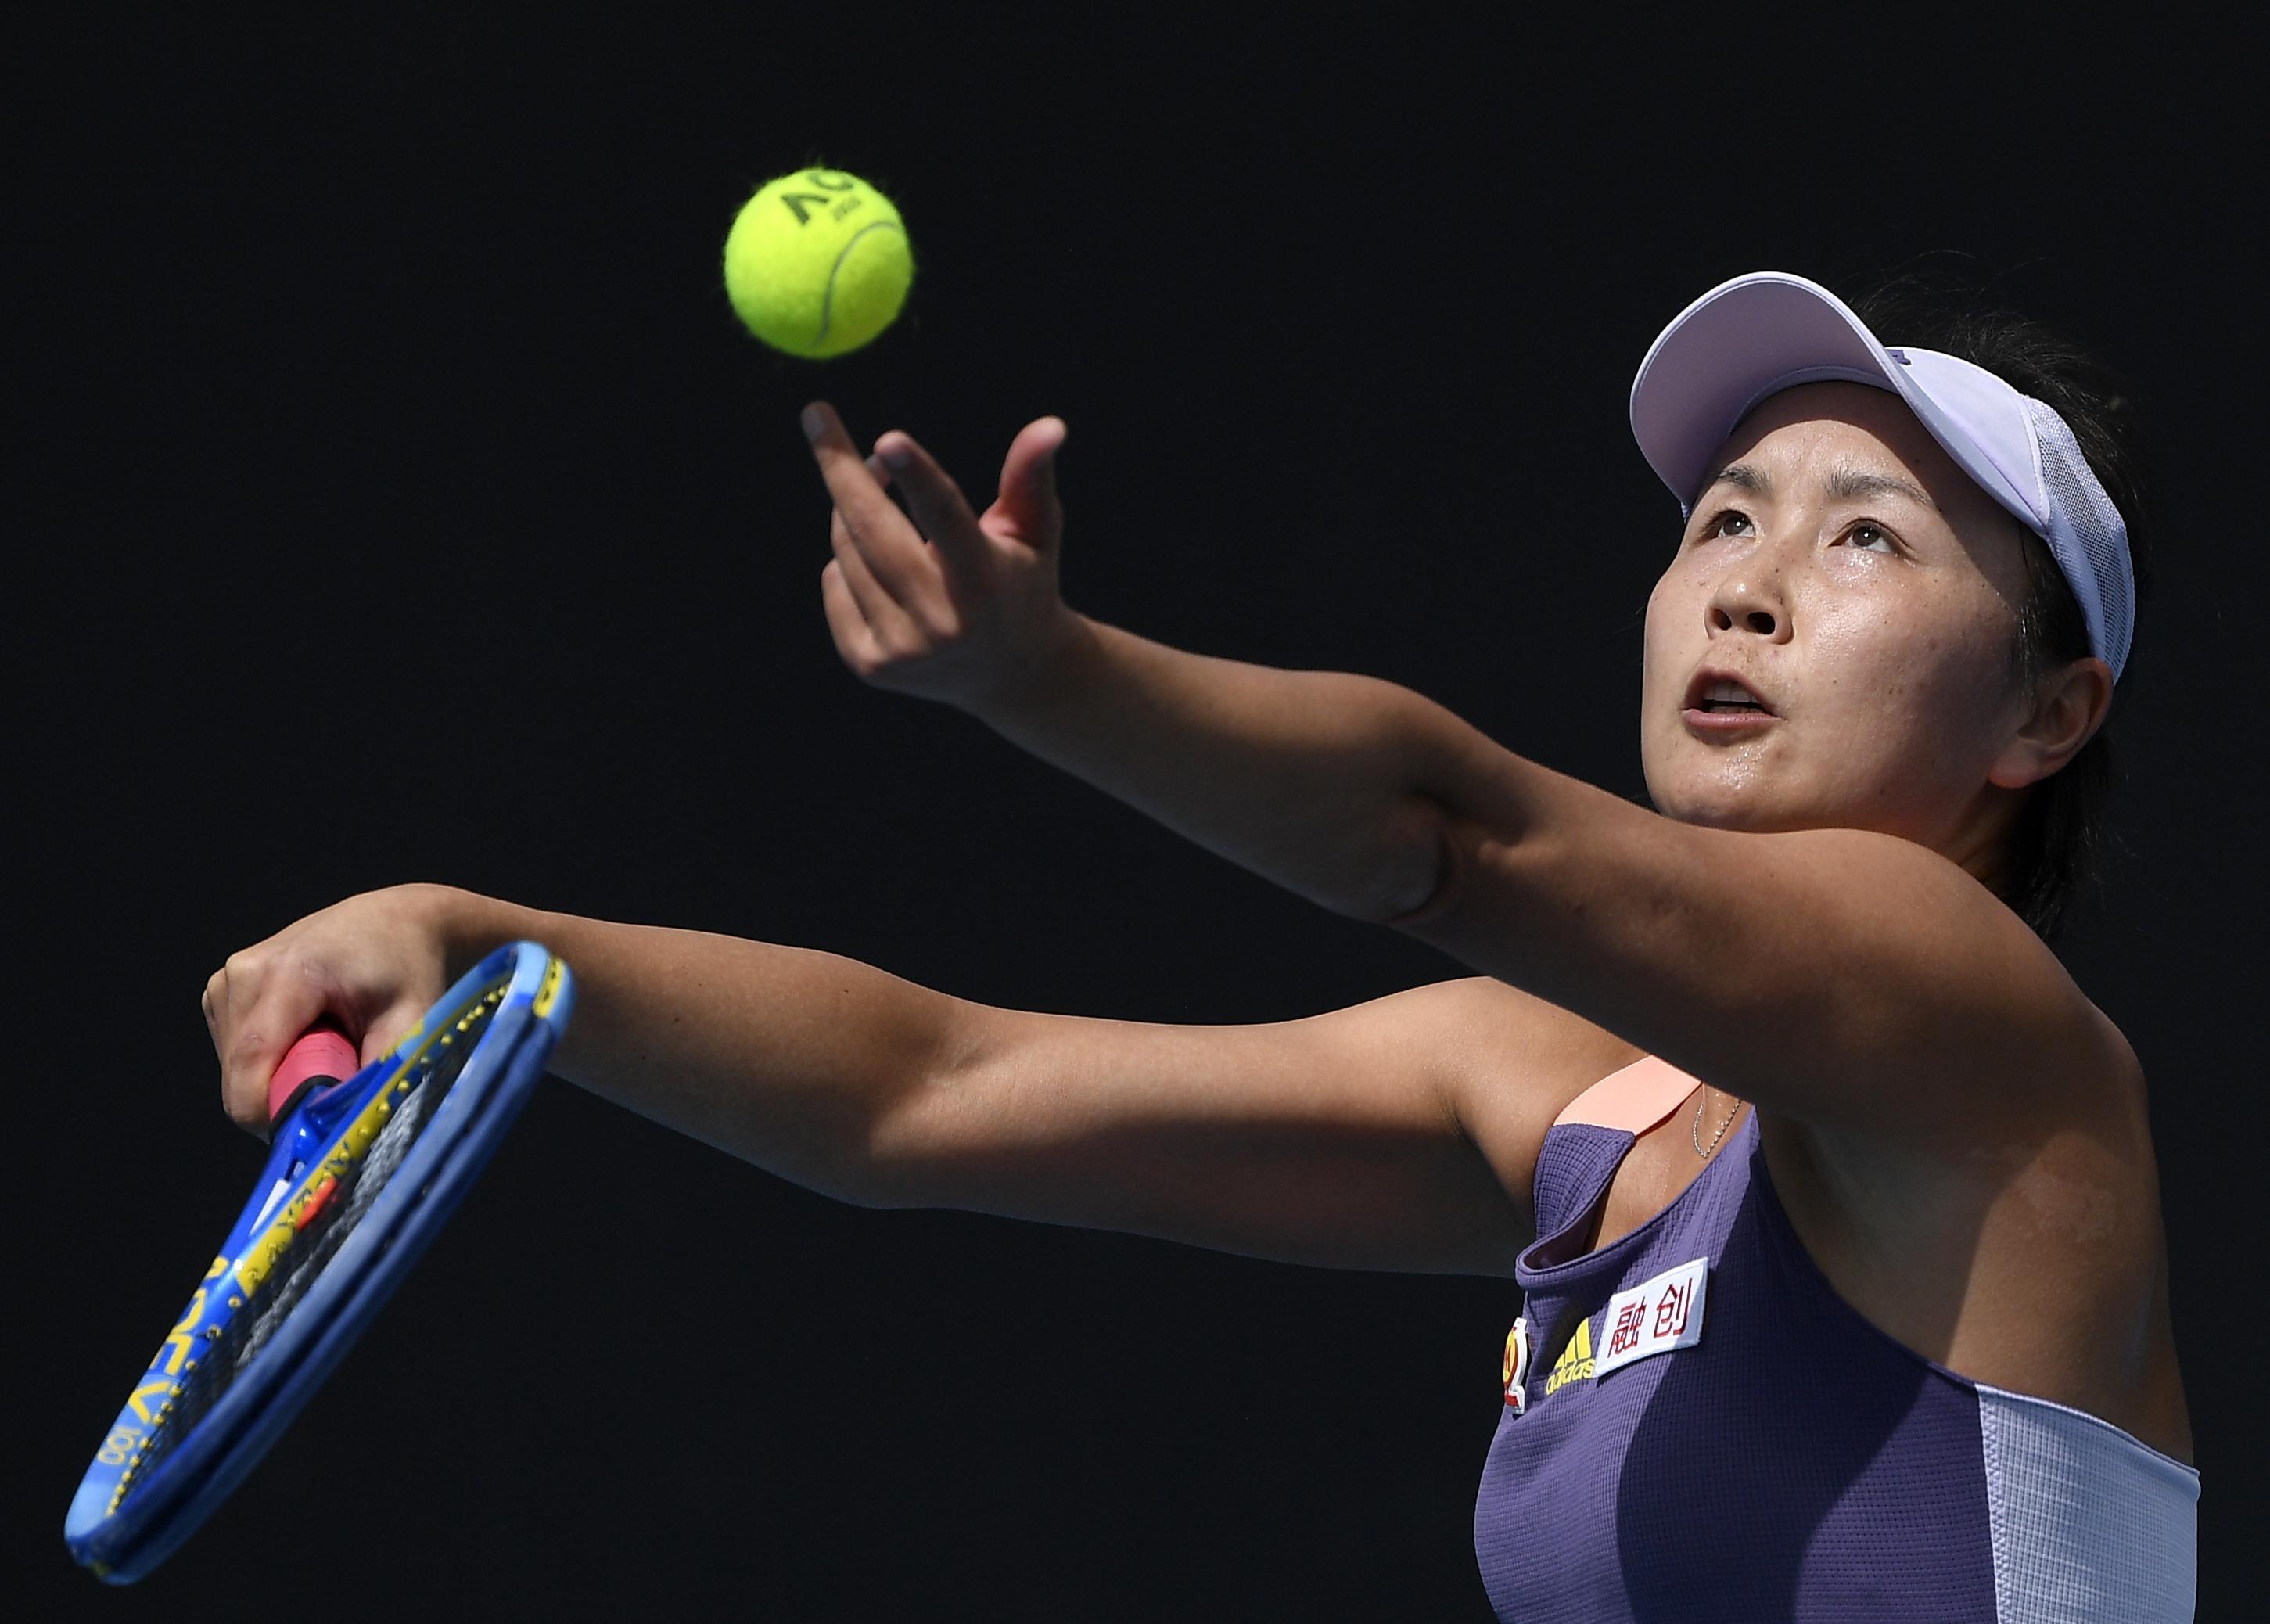 Taciz iddiasında bulunan tenisçi Peng Shuai kararını verdi